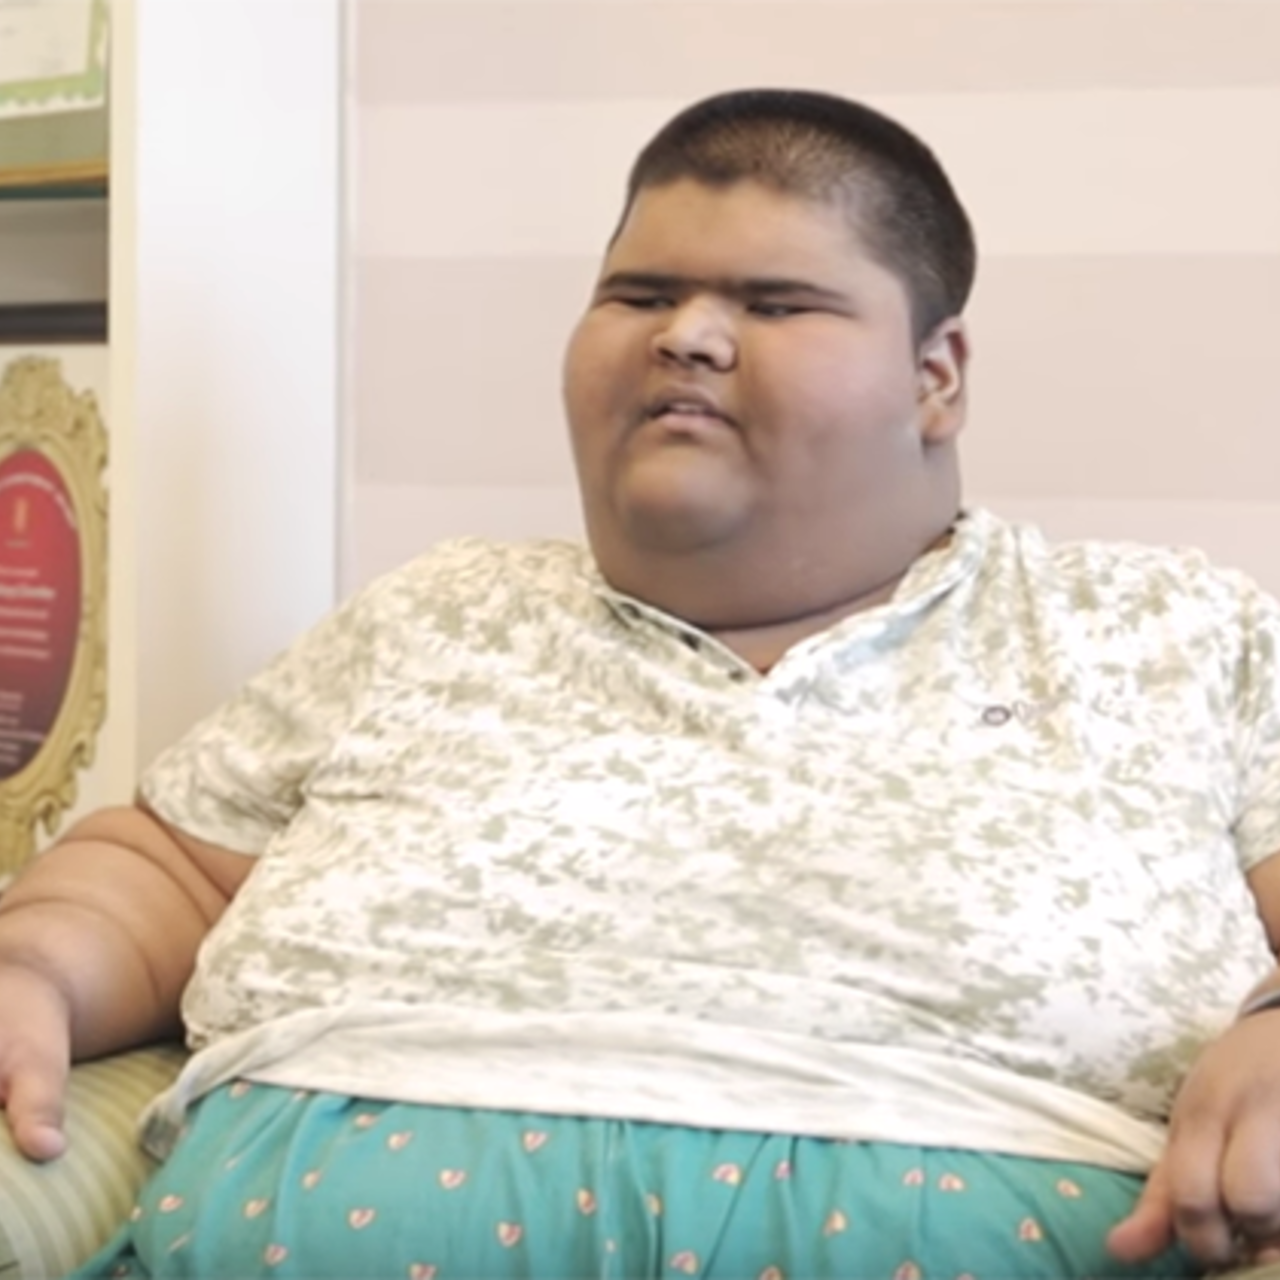 Покажи толстого мальчика. Михир Джаин. Самый толстый мальчик в мире самый толстый мальчик в мире.